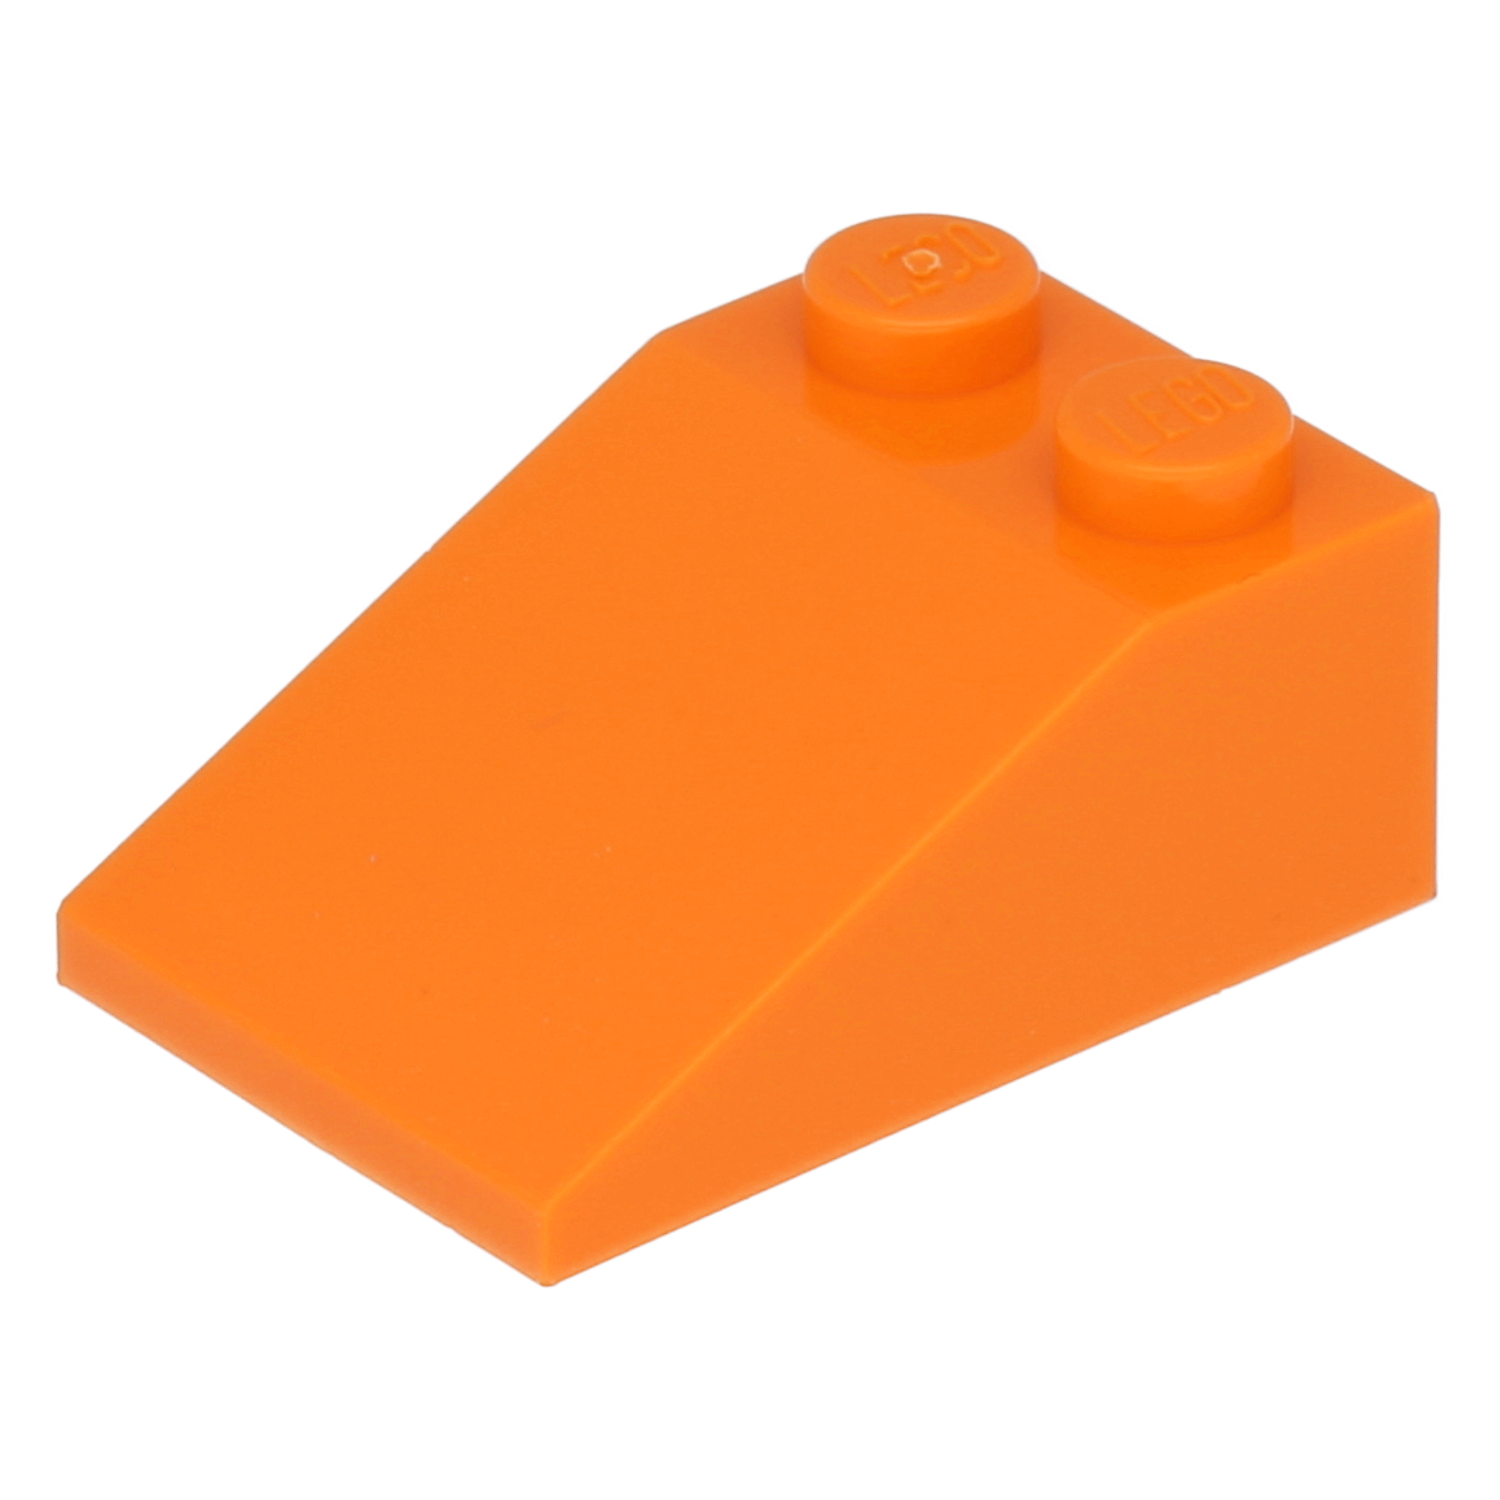 LEGO Dachsteine (standard) - 3 x 2 (33°)